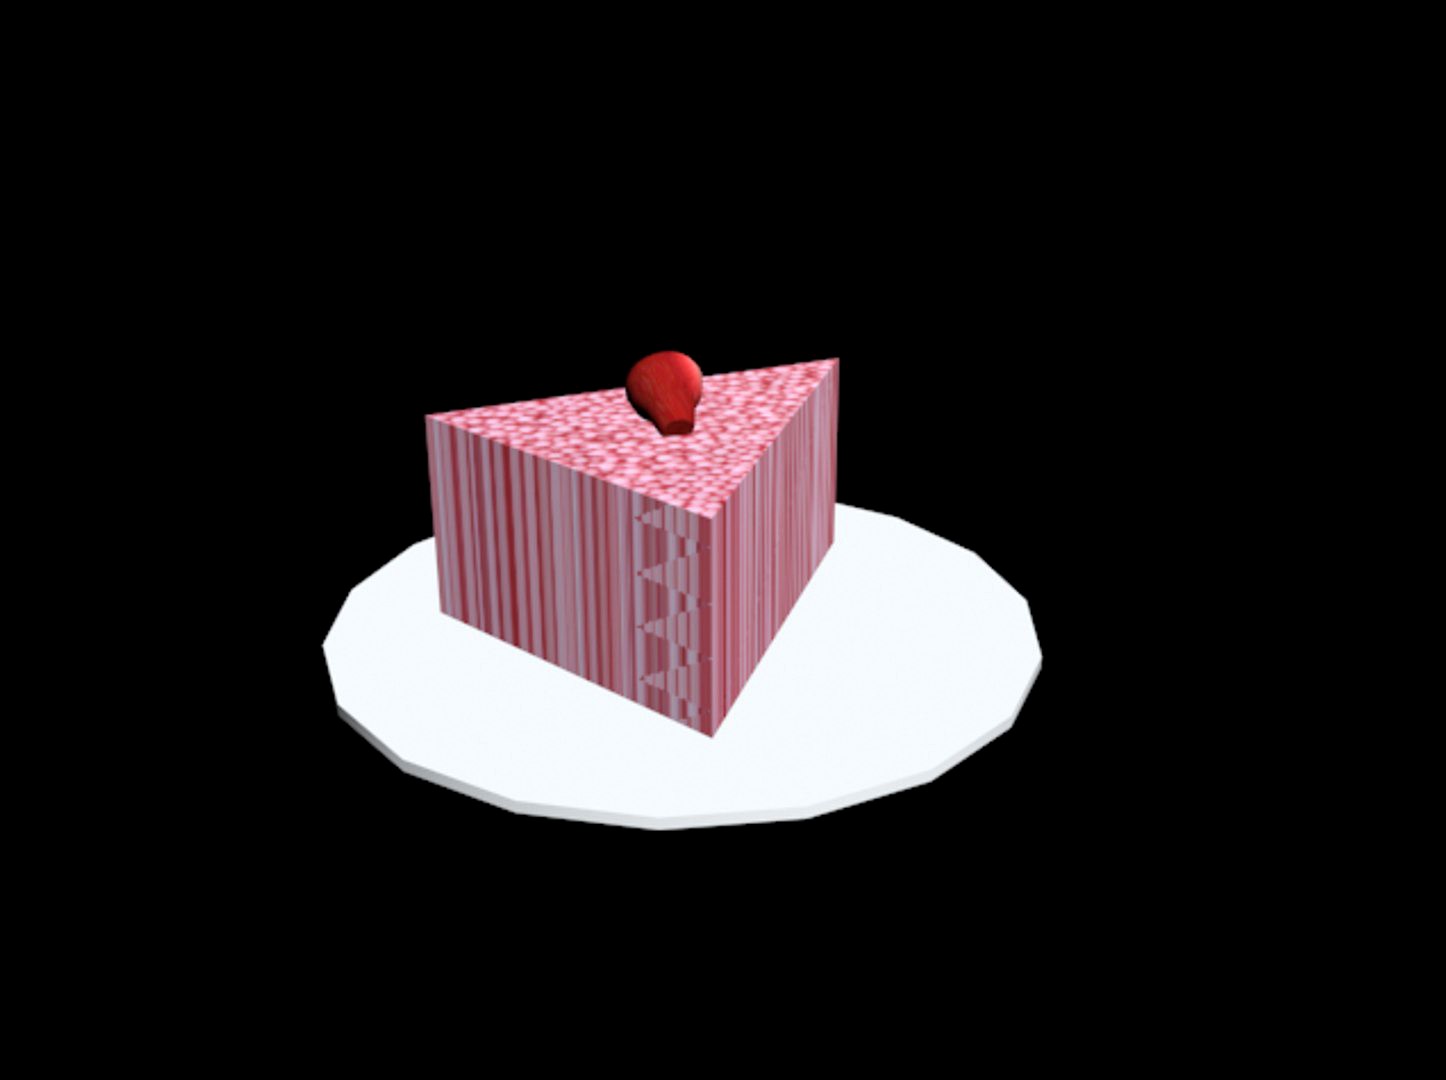 Cake Slice